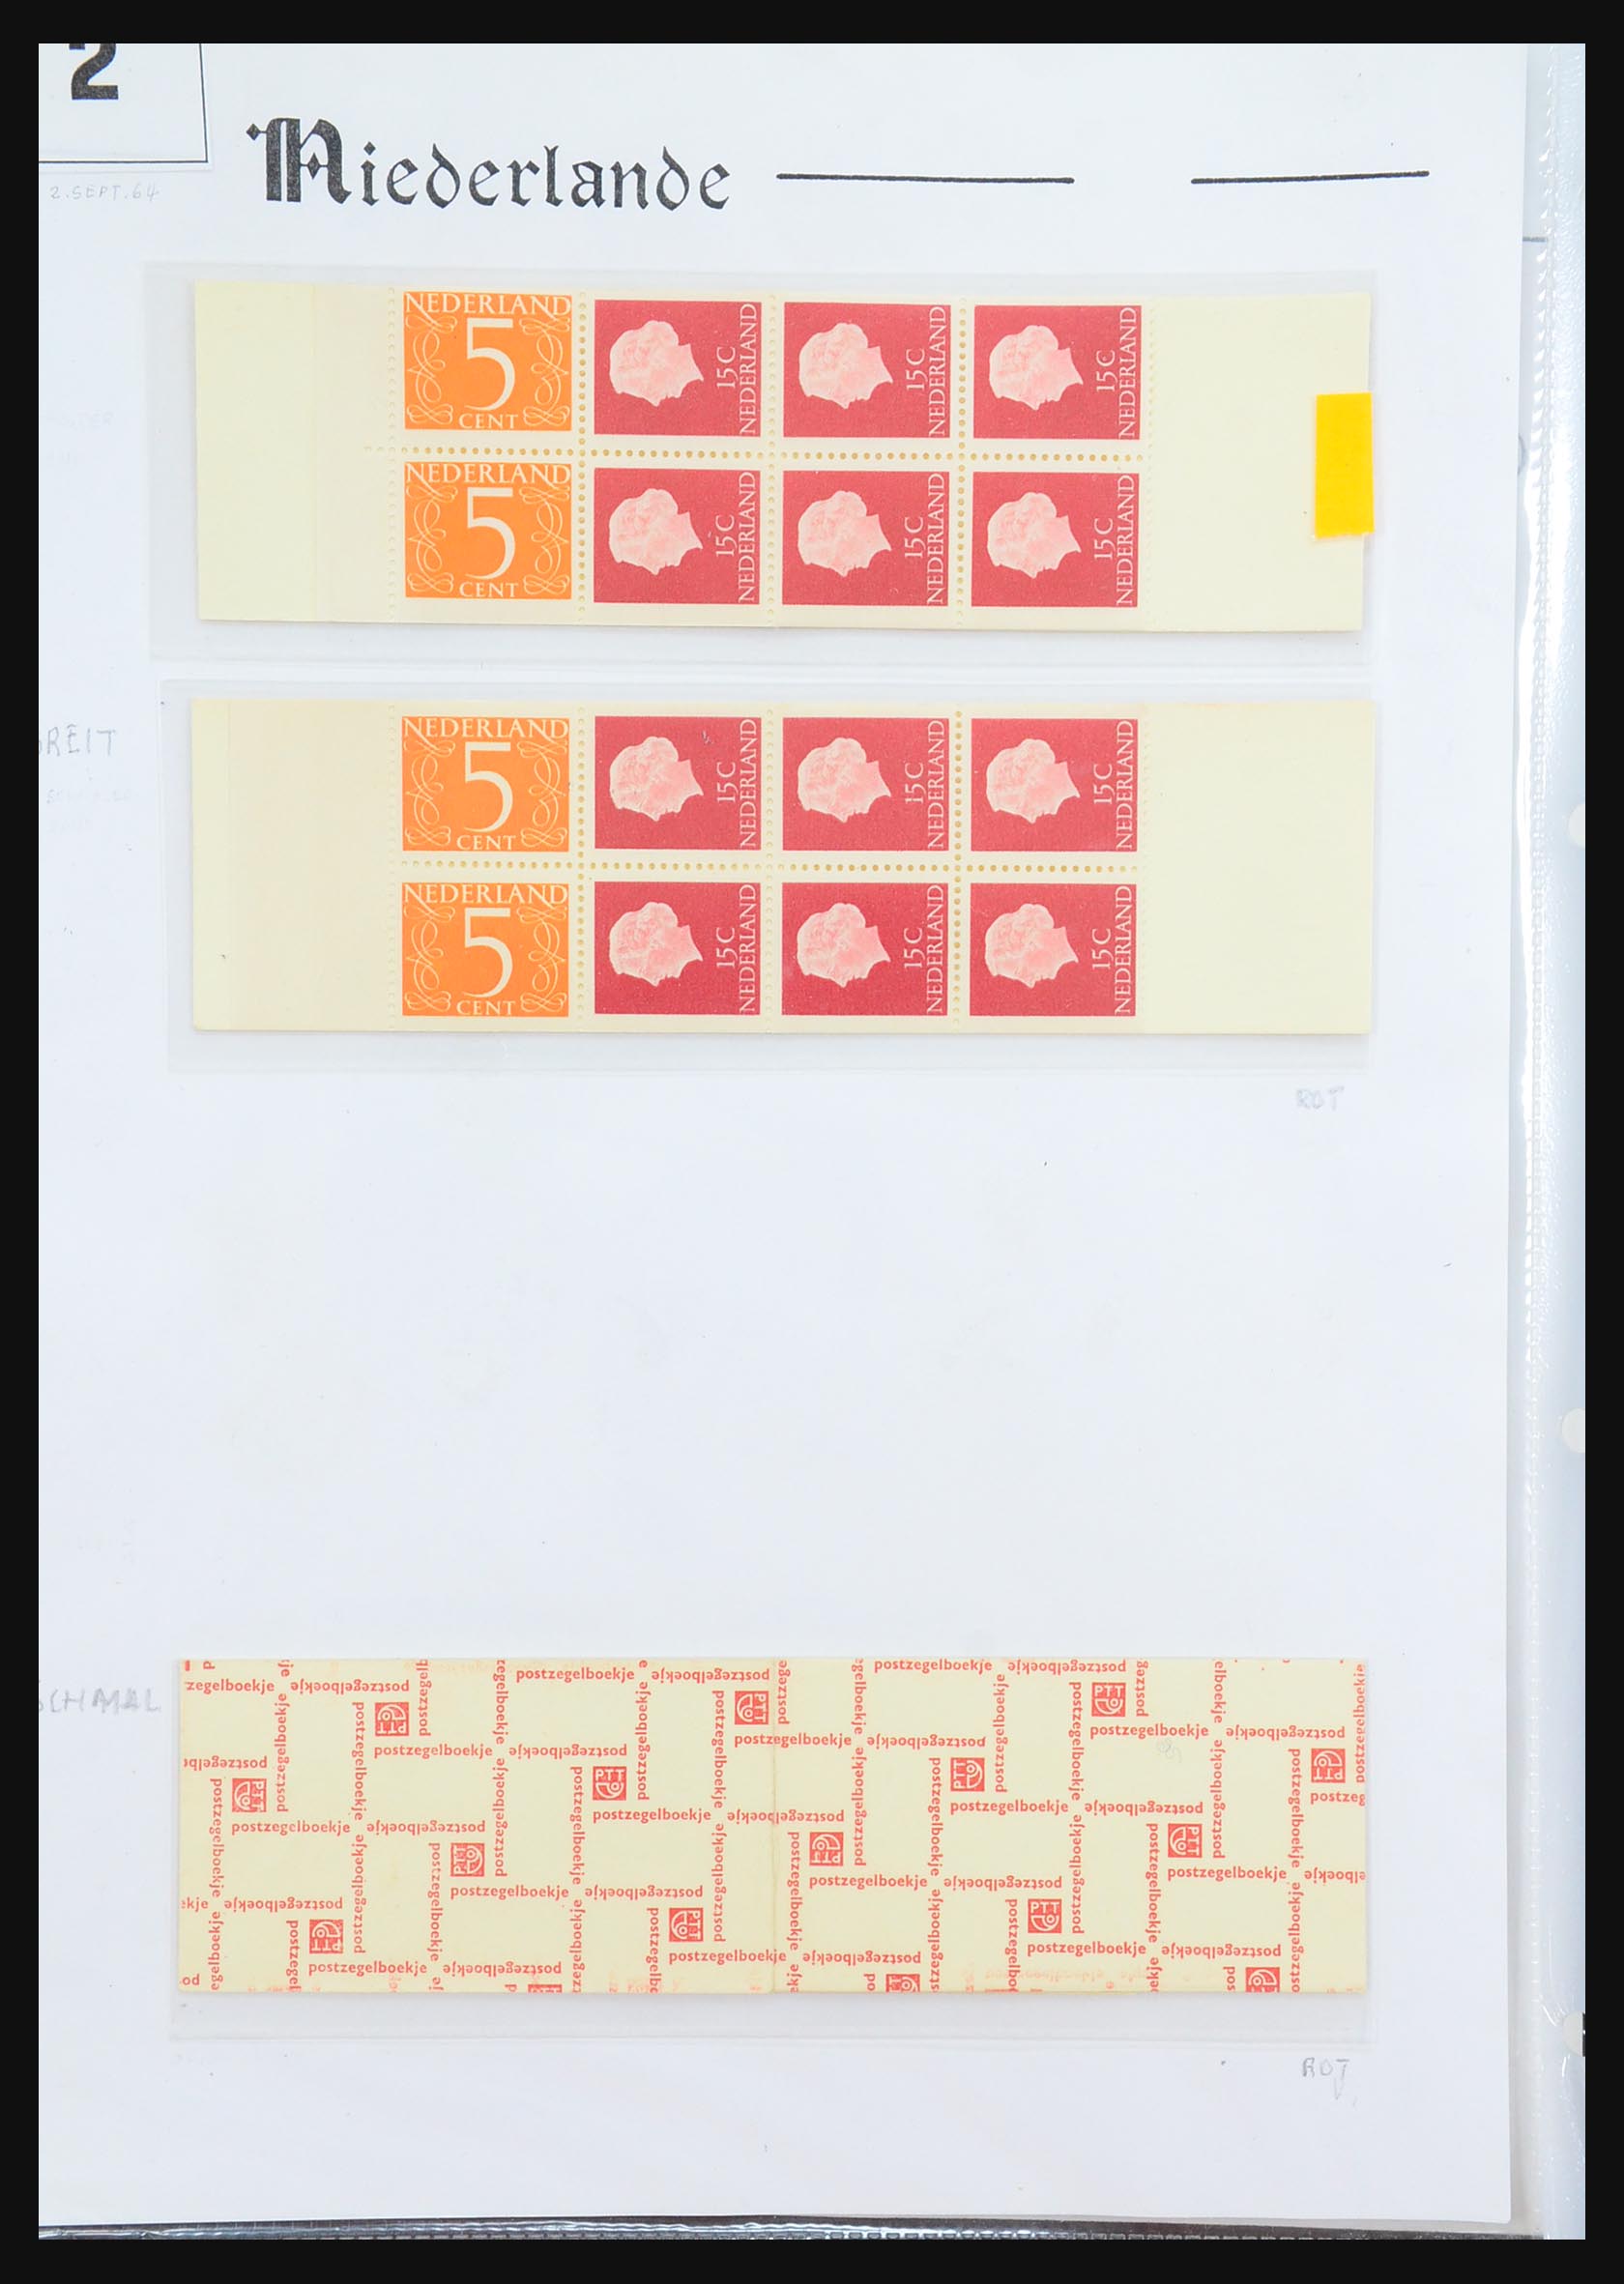 31311 003 - 31311 Netherlands stamp booklets 1964-1994.